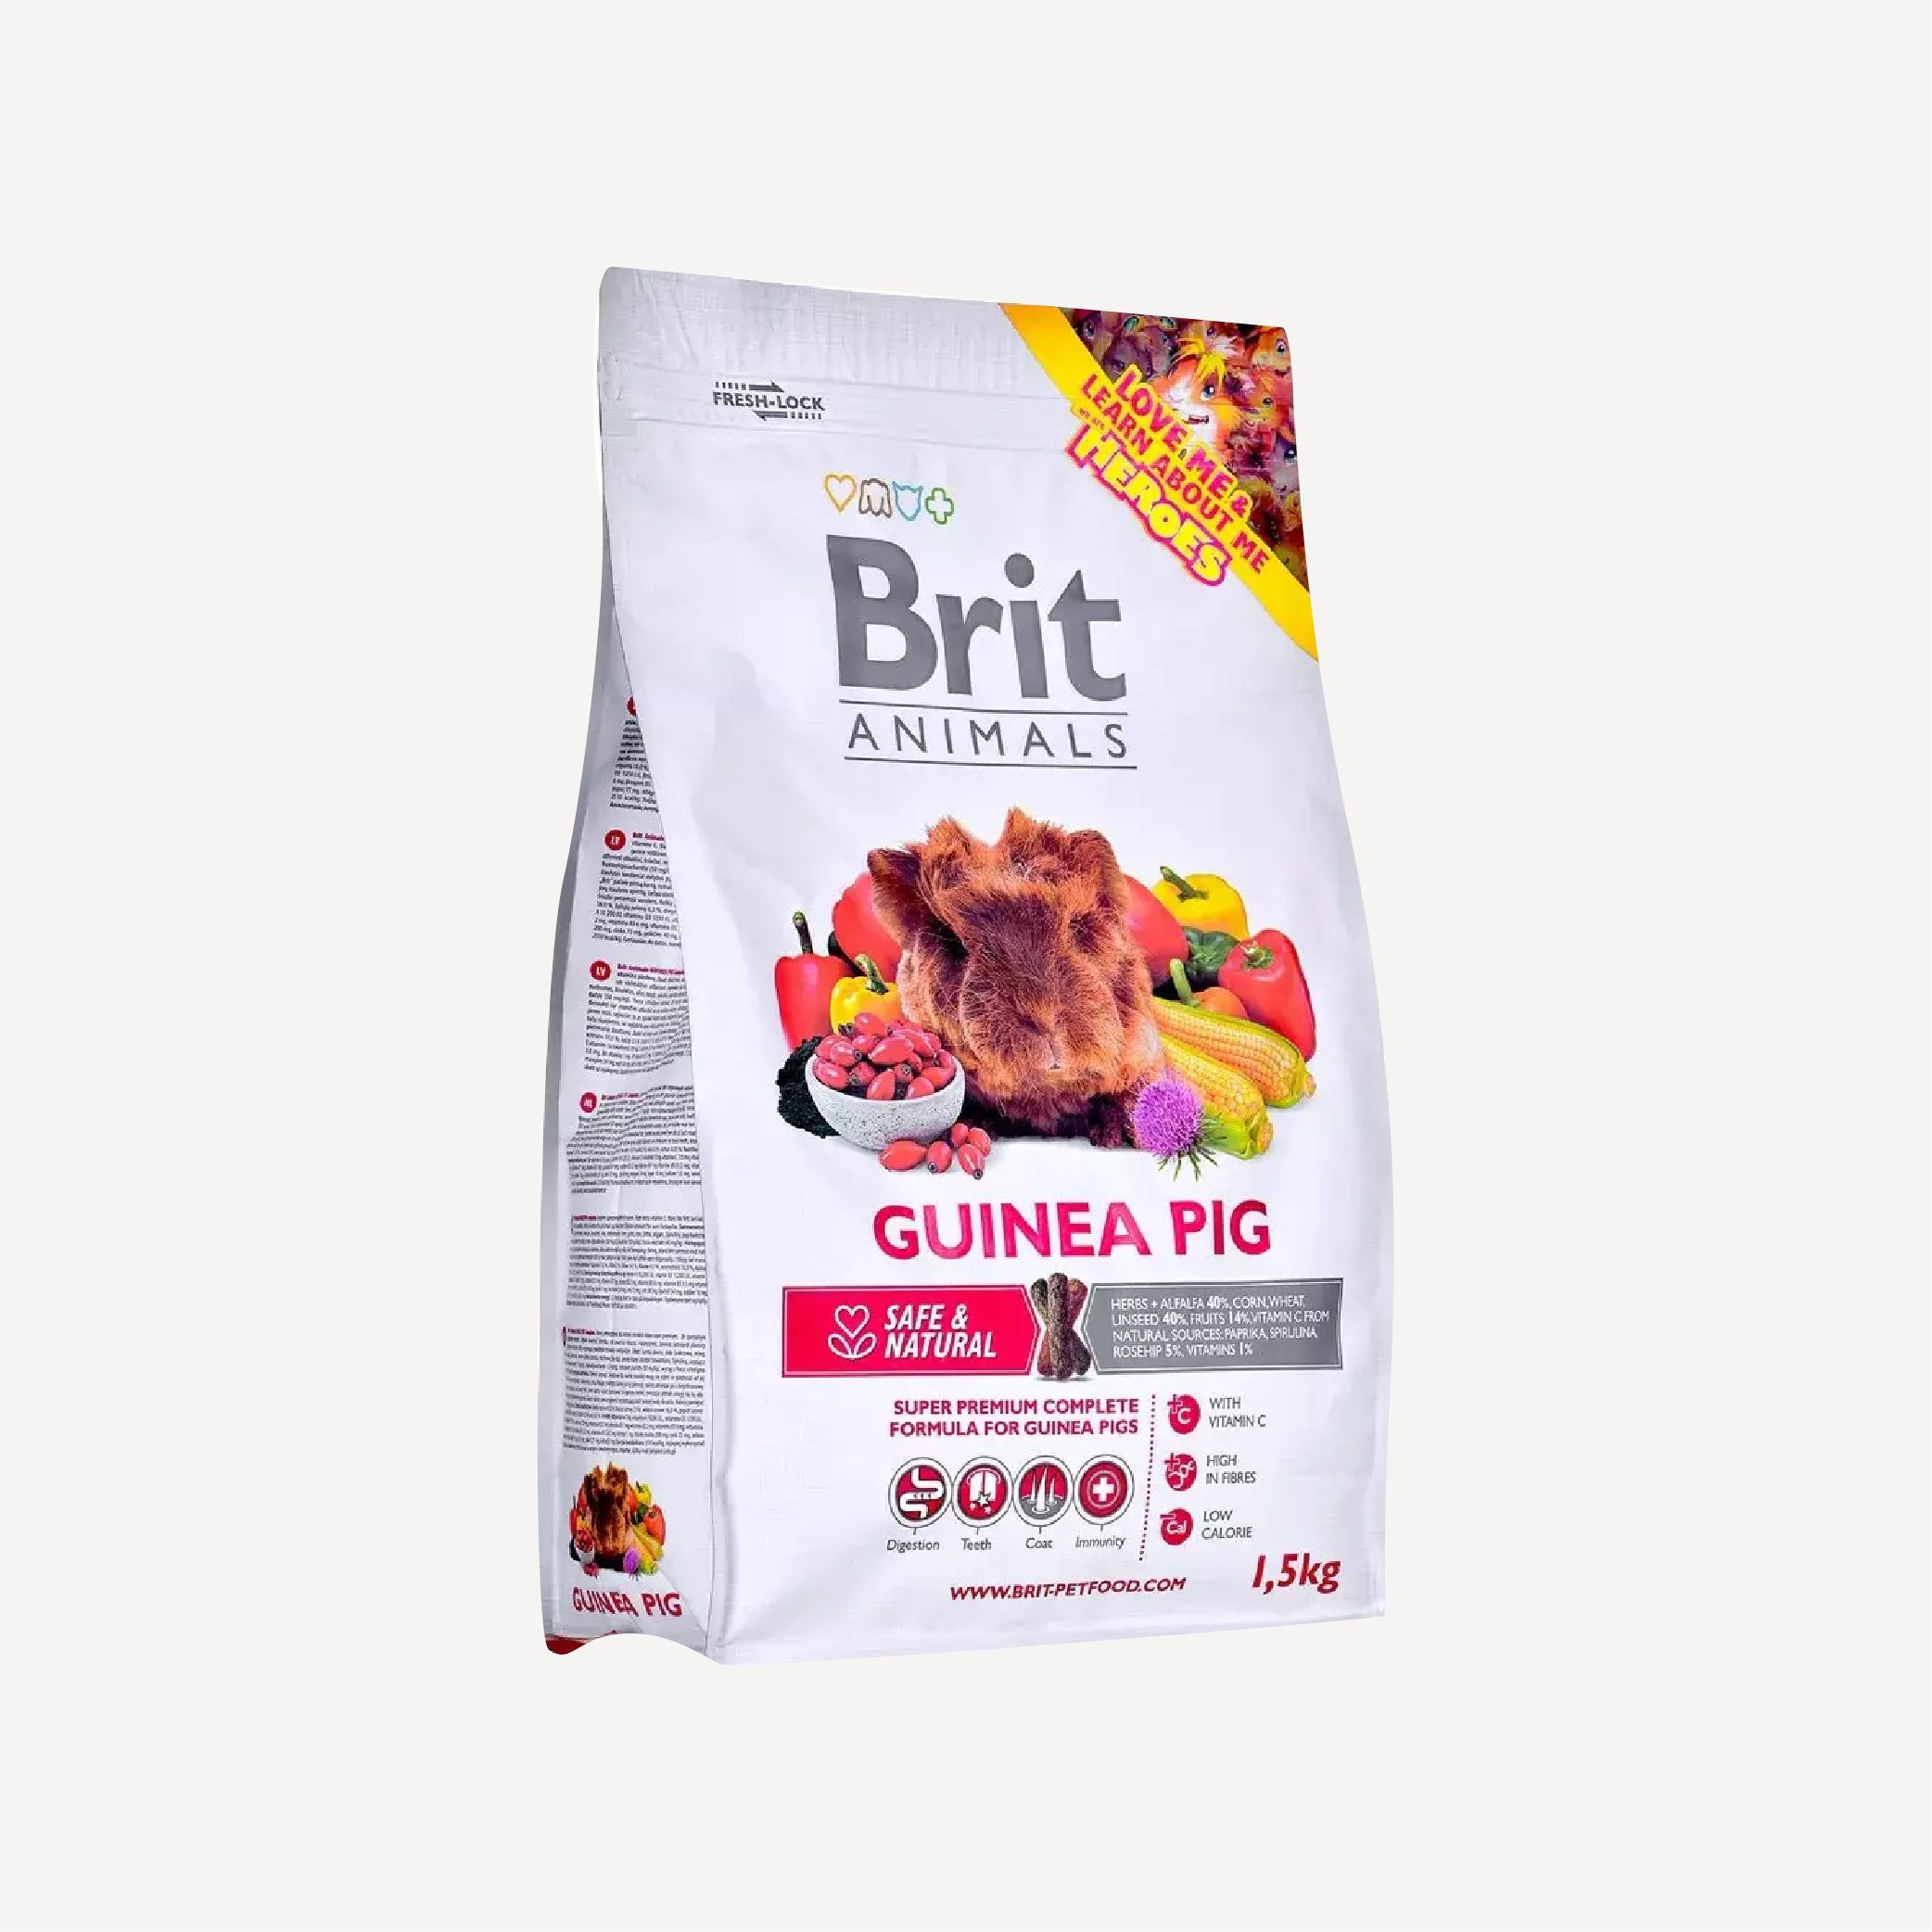 Guinea Pig 1.5 Kg